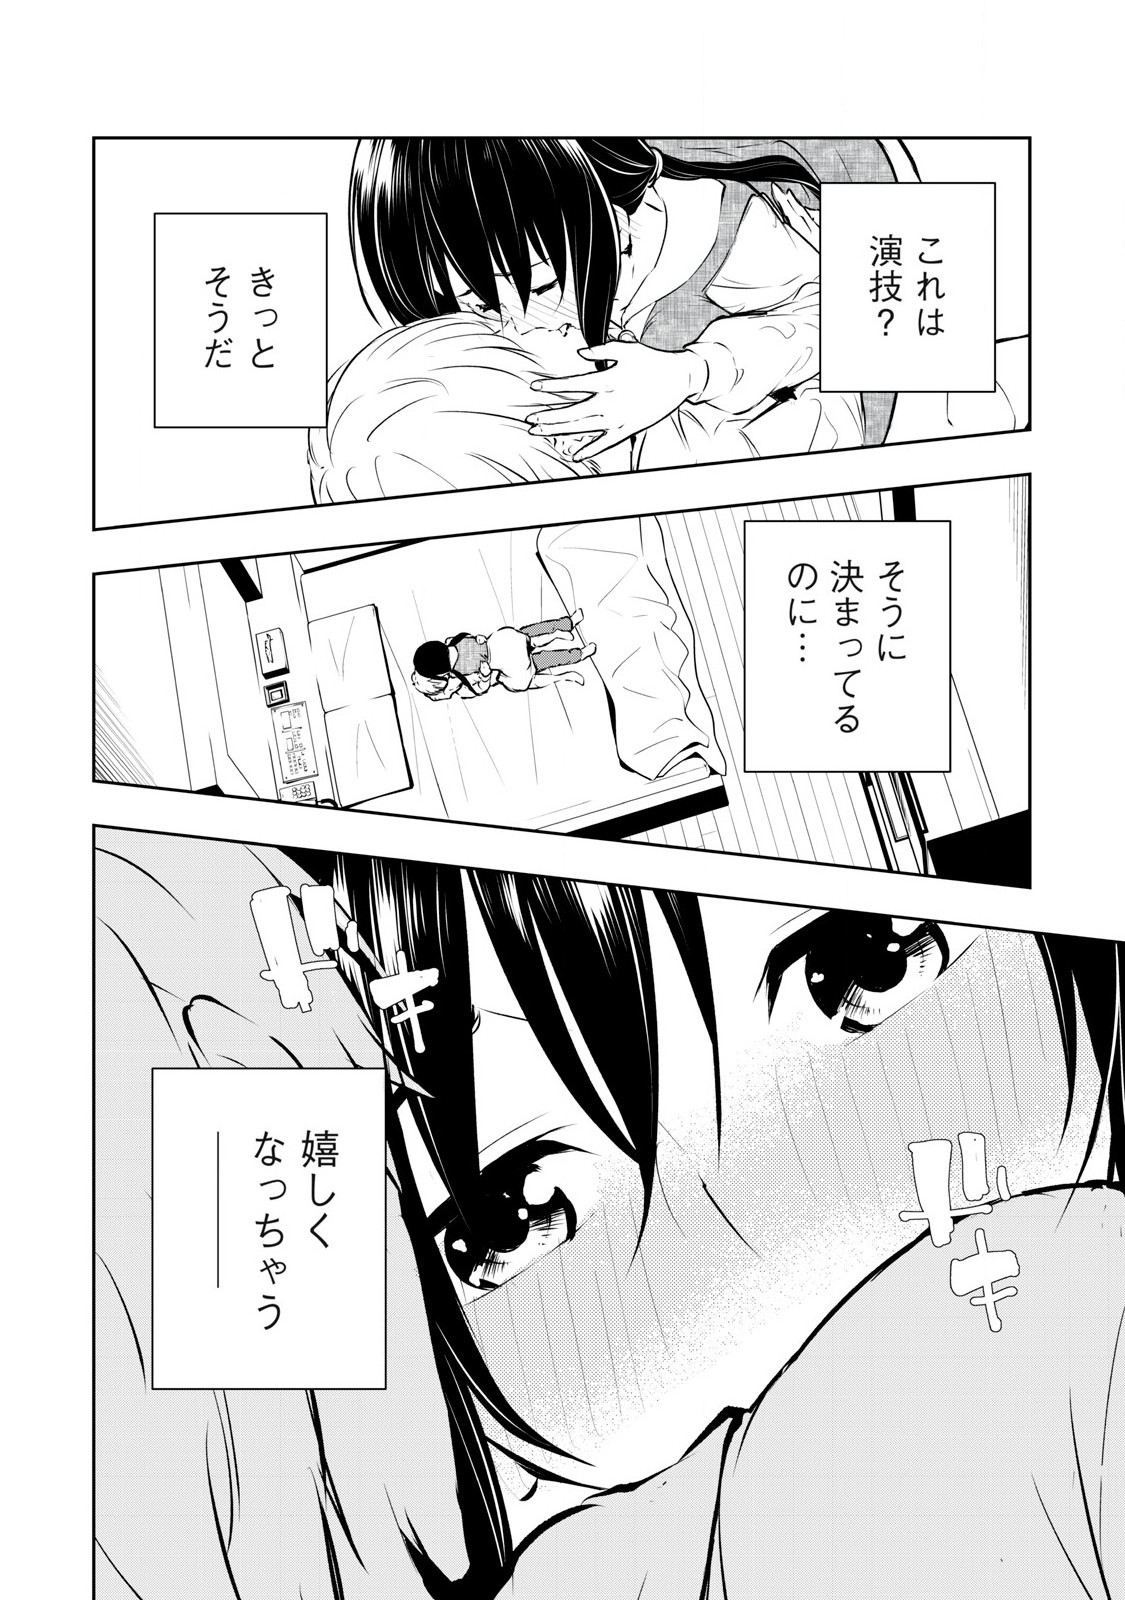 Ore no Joyuu ga Ichiban Midara - Chapter 53 - Page 2